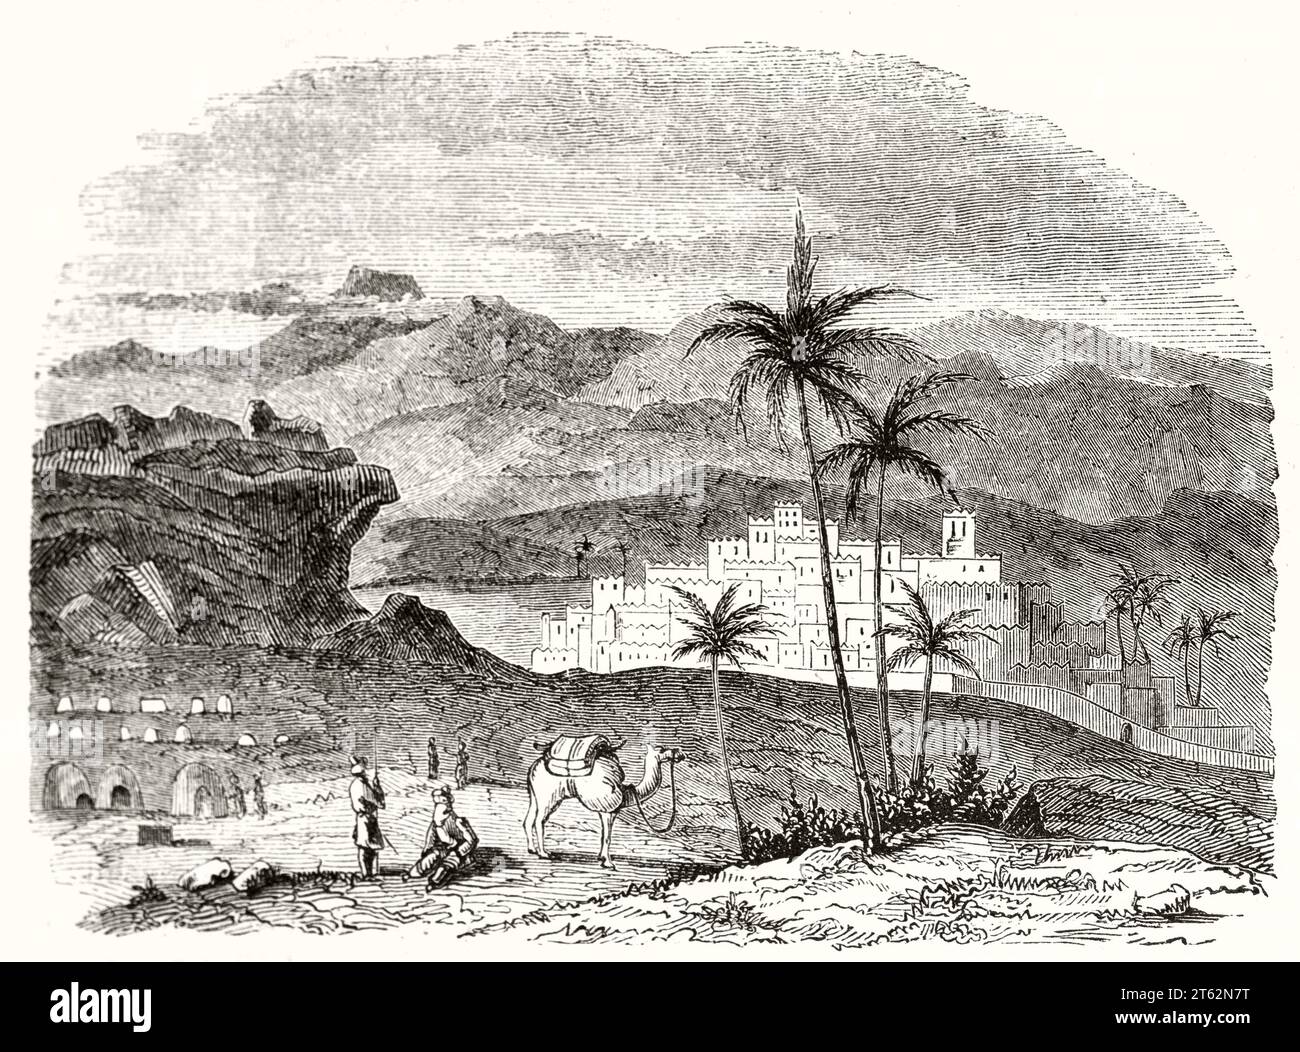 Vue ancienne de Ghrat (?) Sahara central. Par auteur non identifié, publ. Sur magasin pittoresque, Paris, 1849 Banque D'Images